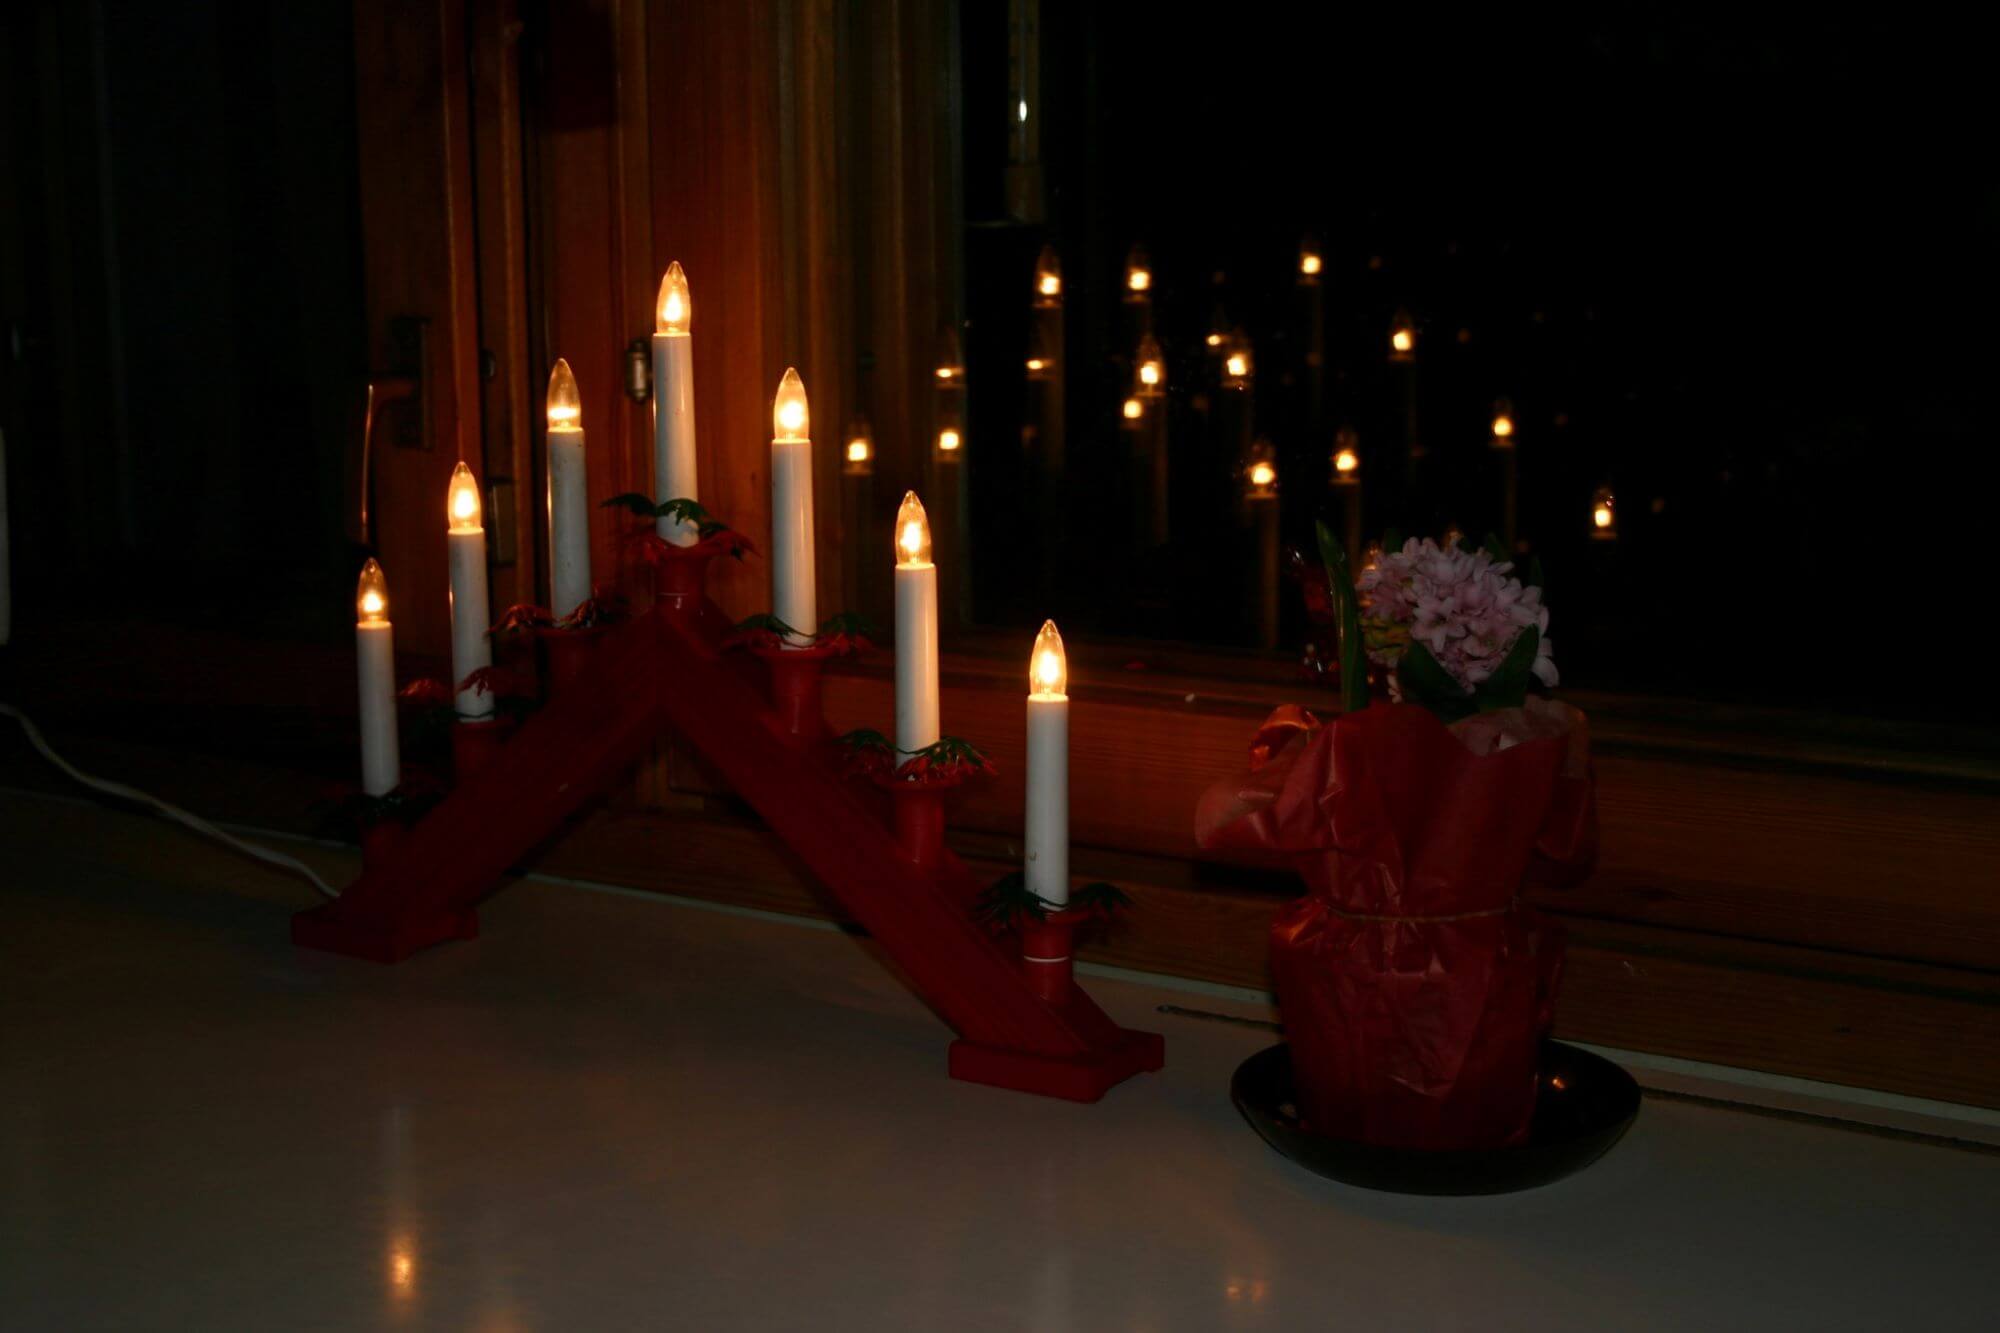 Świąteczna dekoracja okna, czyli drewniany świecznik w kolorze czerwonym postawiony na parapecie okna.